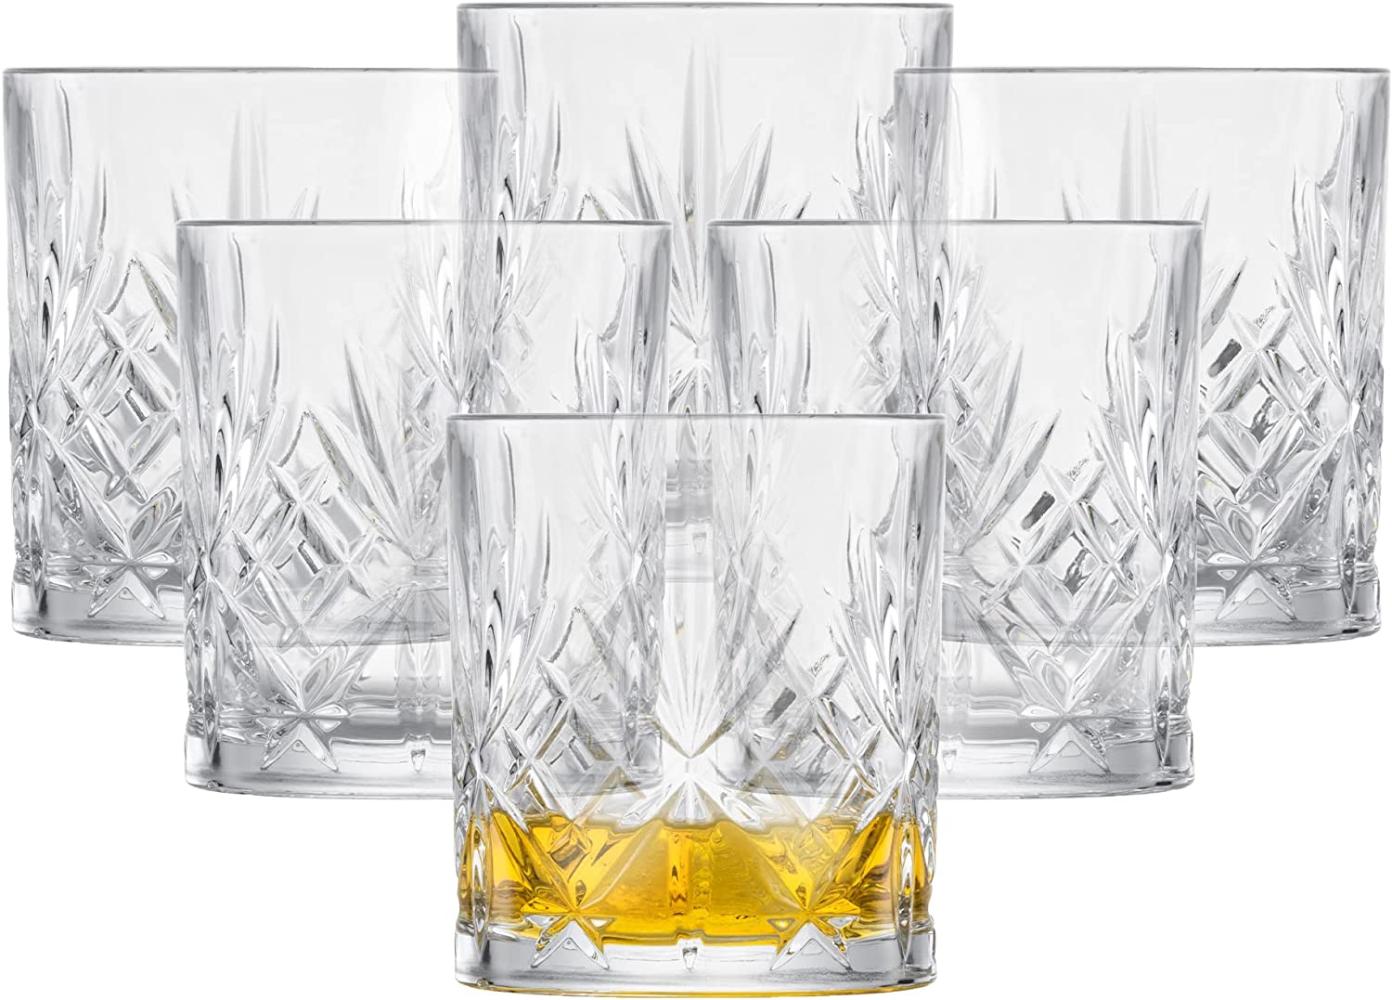 Schott Zwiesel Whiskyglas Show 6er Set, Whiskytumbler, Schnapsglas, Tritan Kristallglas, 334 ml, 121553 Bild 1